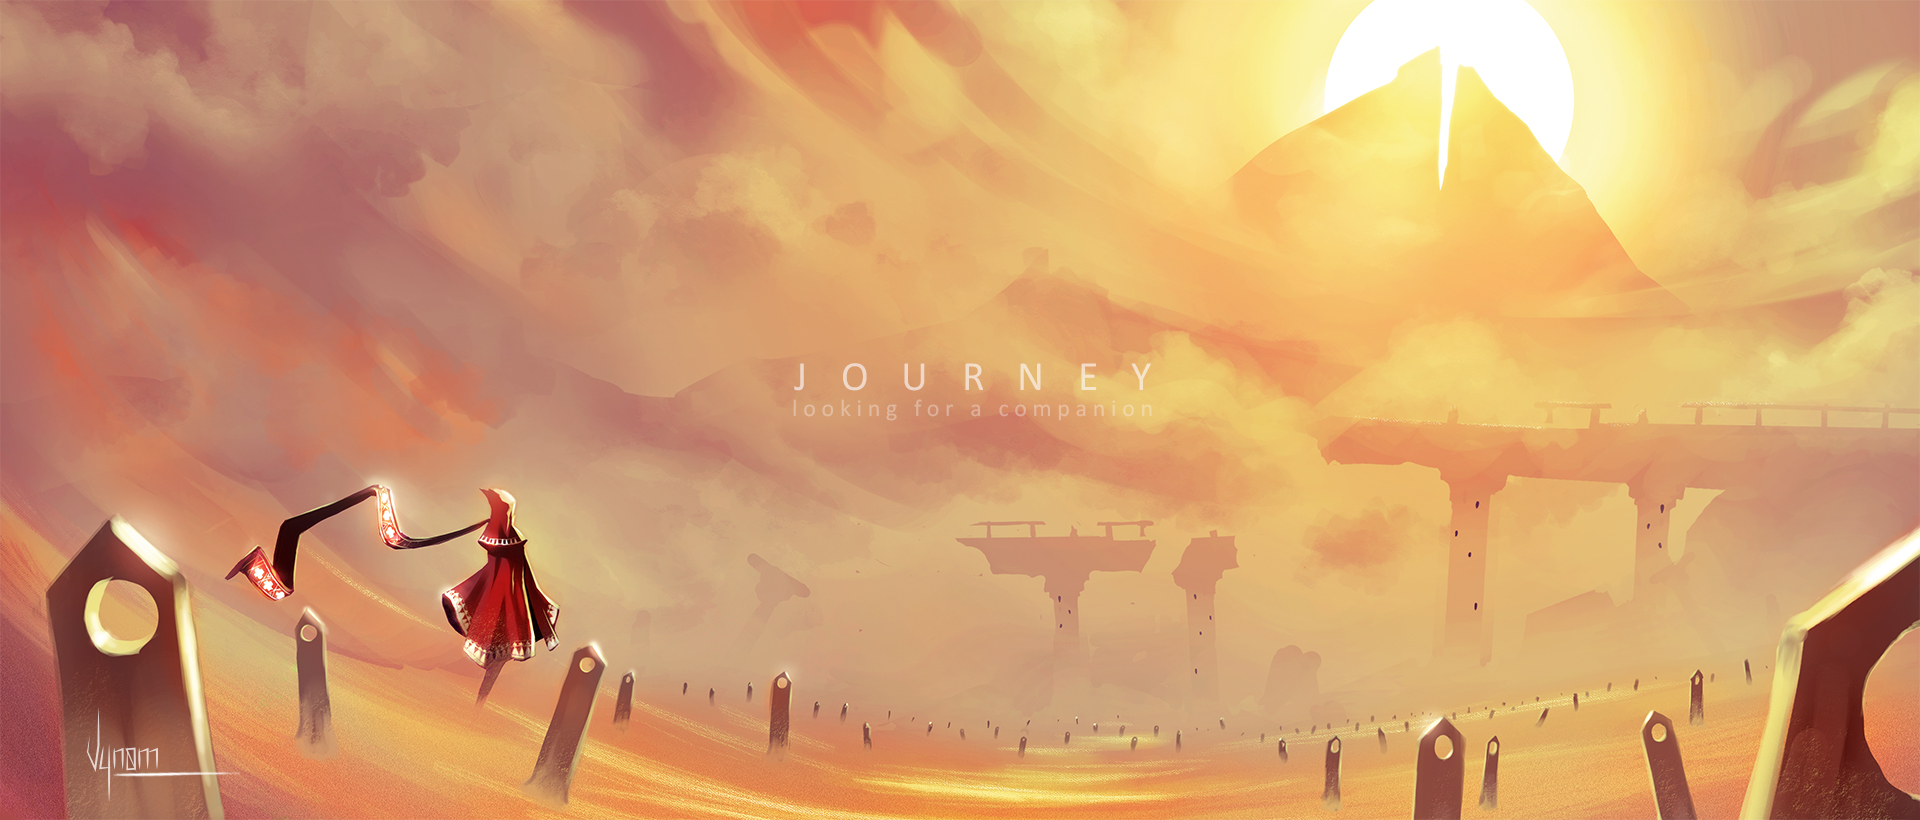 Celestyal journey. Journey игра. Journey игра Art. Journey 2012. Journey пейзажи.